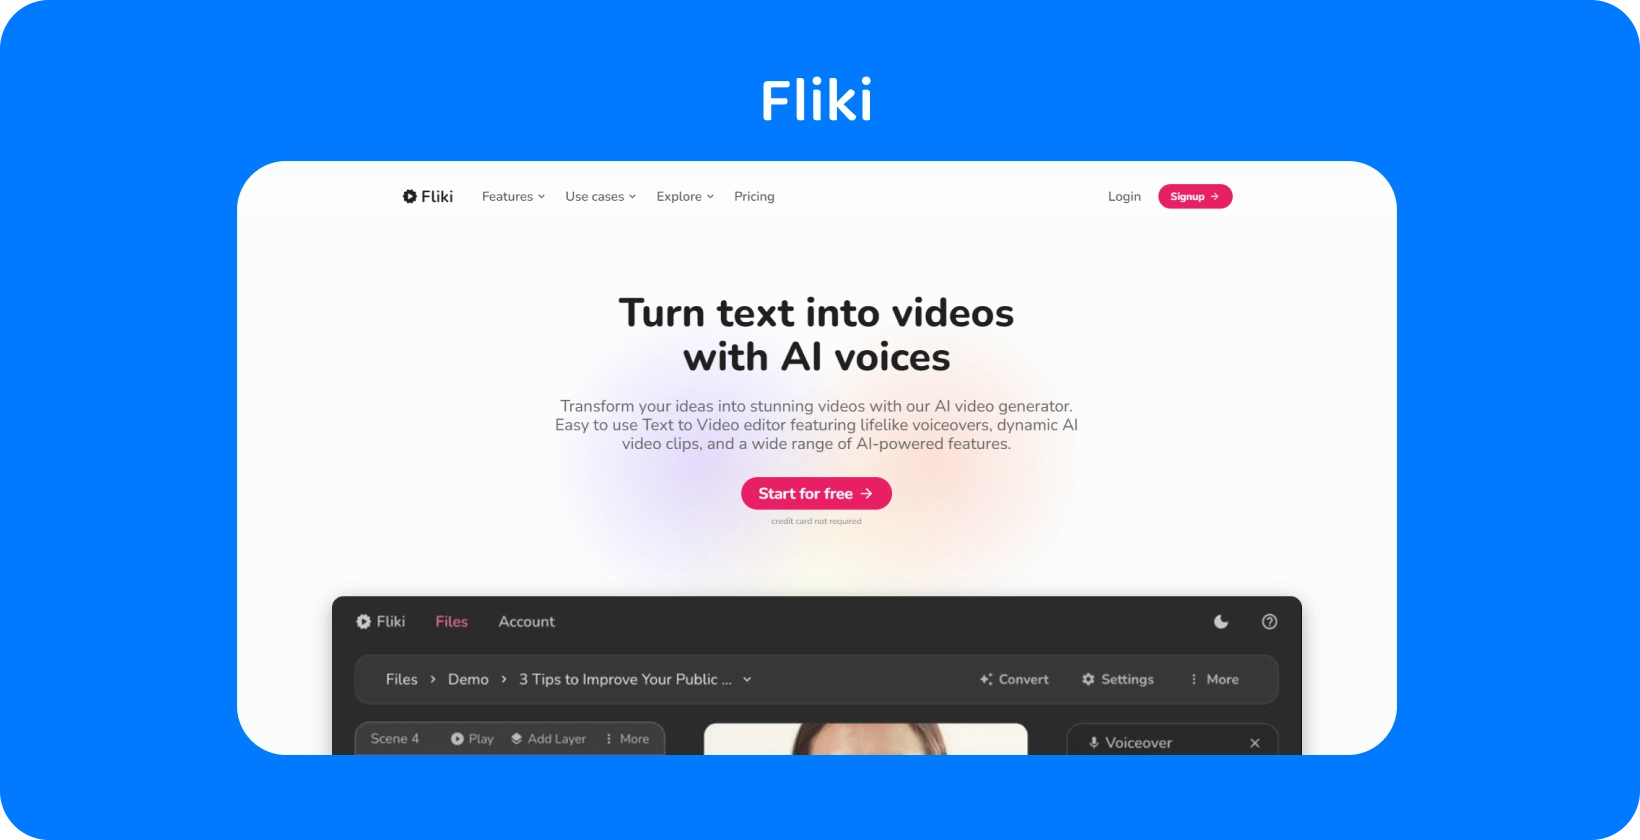 Η σελίδα πλατφόρμας του Fliki δείχνει πώς να μετατρέψετε κείμενο σε βίντεο με AI φωνές, προσφέροντας μια εμπειρία επεξεργασίας κειμένου σε βίντεο.